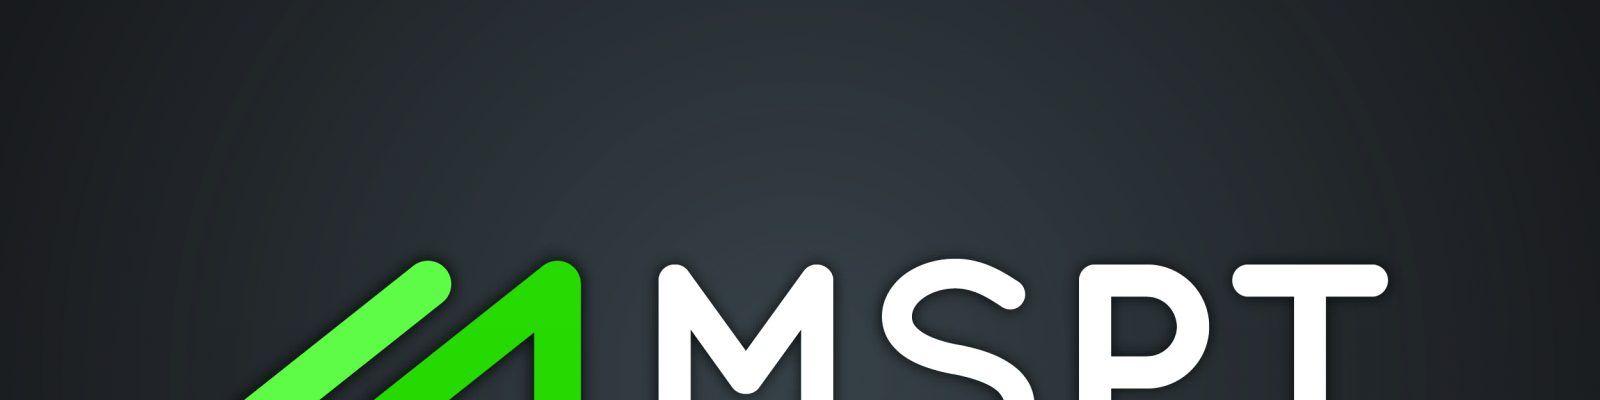 Mspt Logo - Cropped MSPT Logo On Black